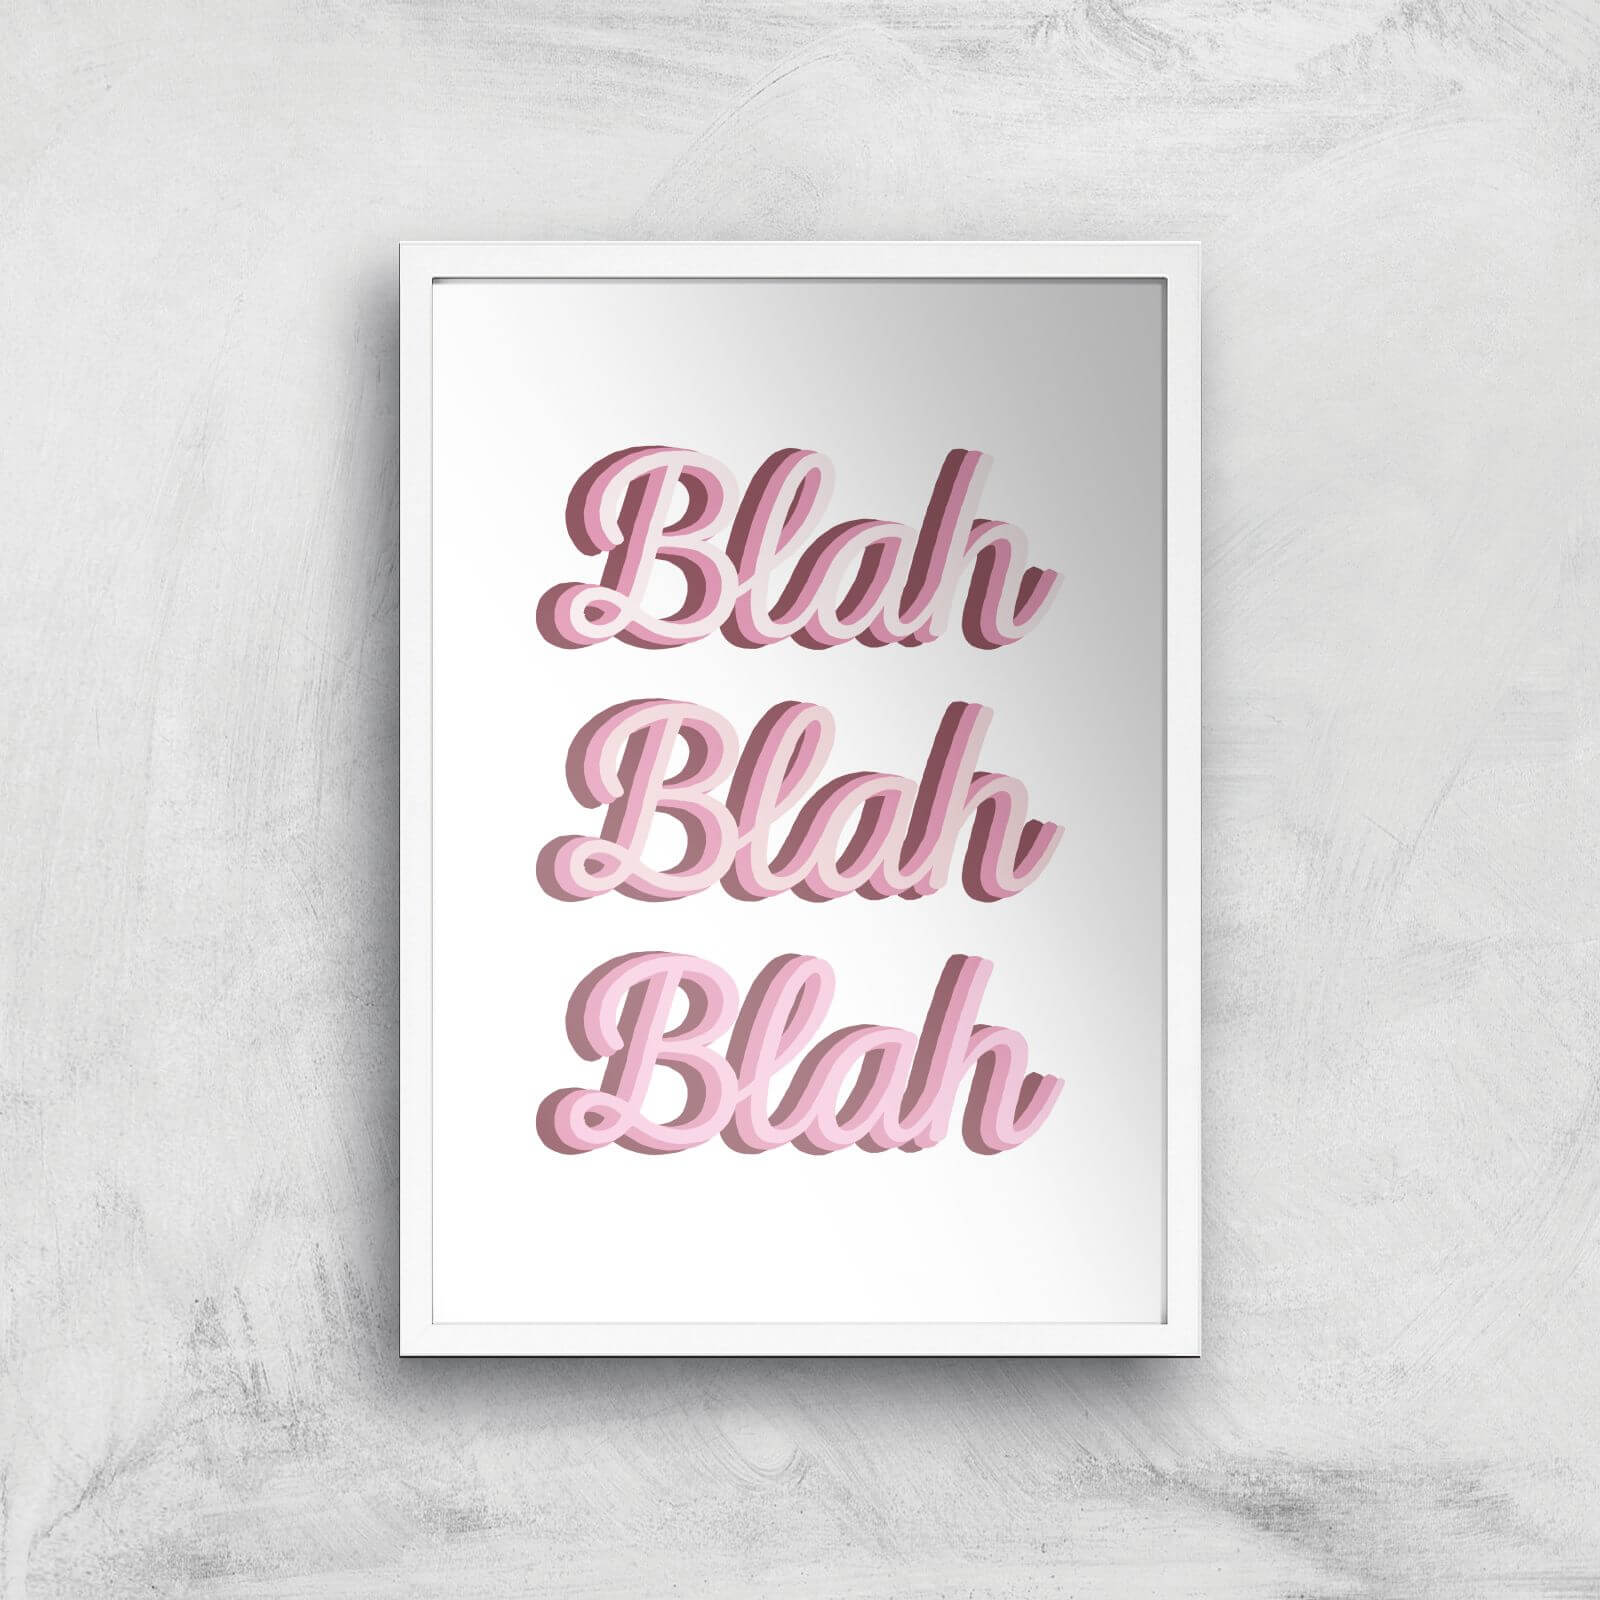 Blah Blah Blah Giclée Art Print - A3 - White Frame